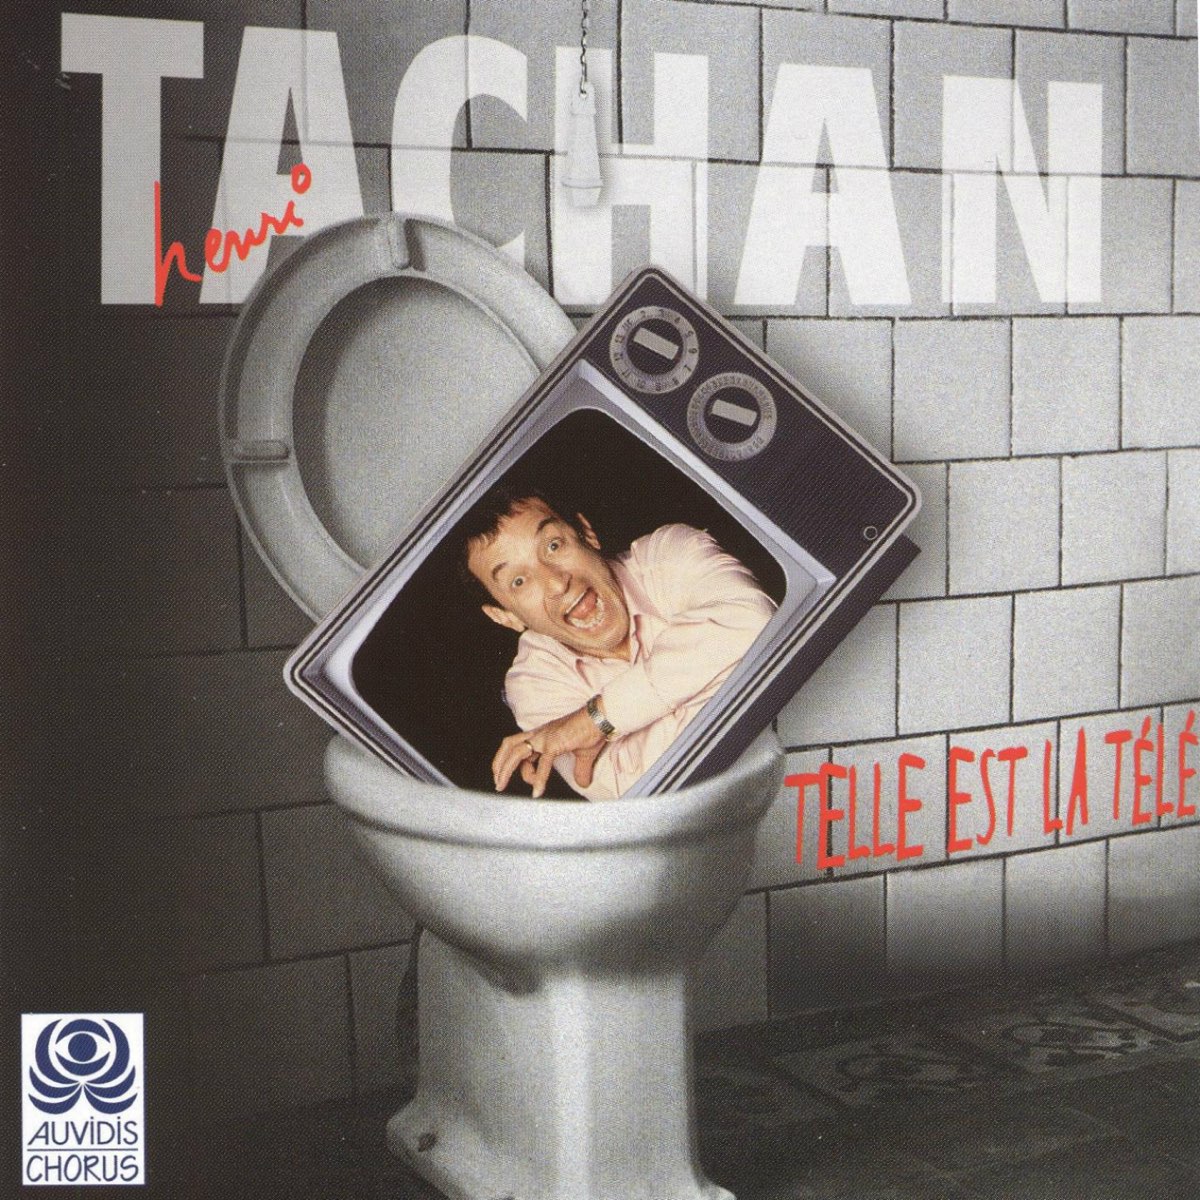 Telle est la télé - Album by Henri Tachan - Apple Music